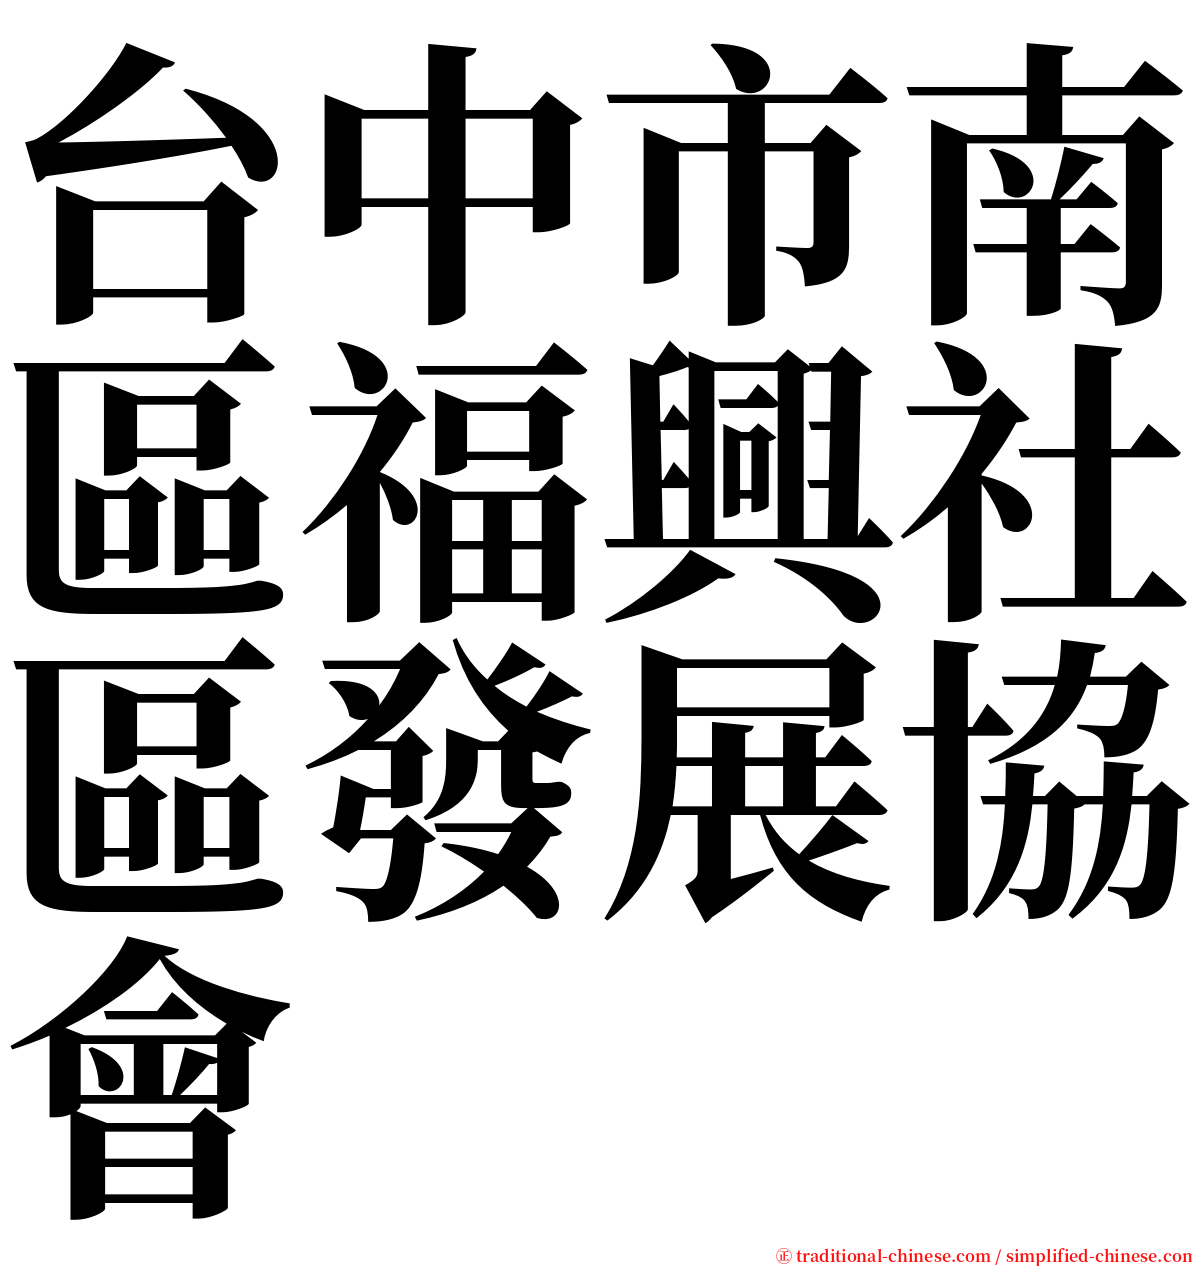 台中市南區福興社區發展協會 serif font